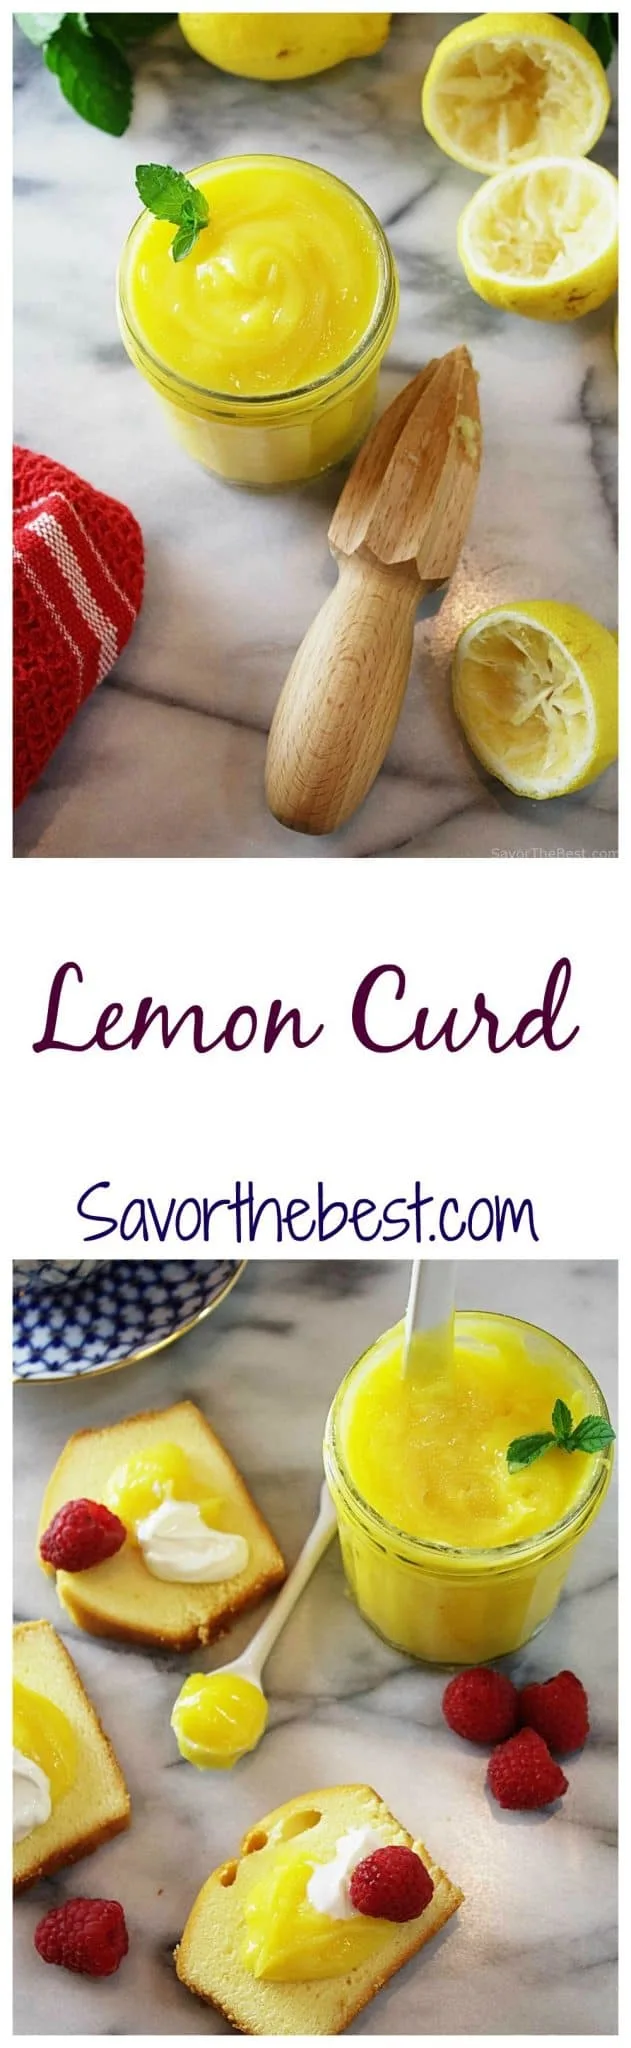 A jar of lemon curd next to fresh lemons. 